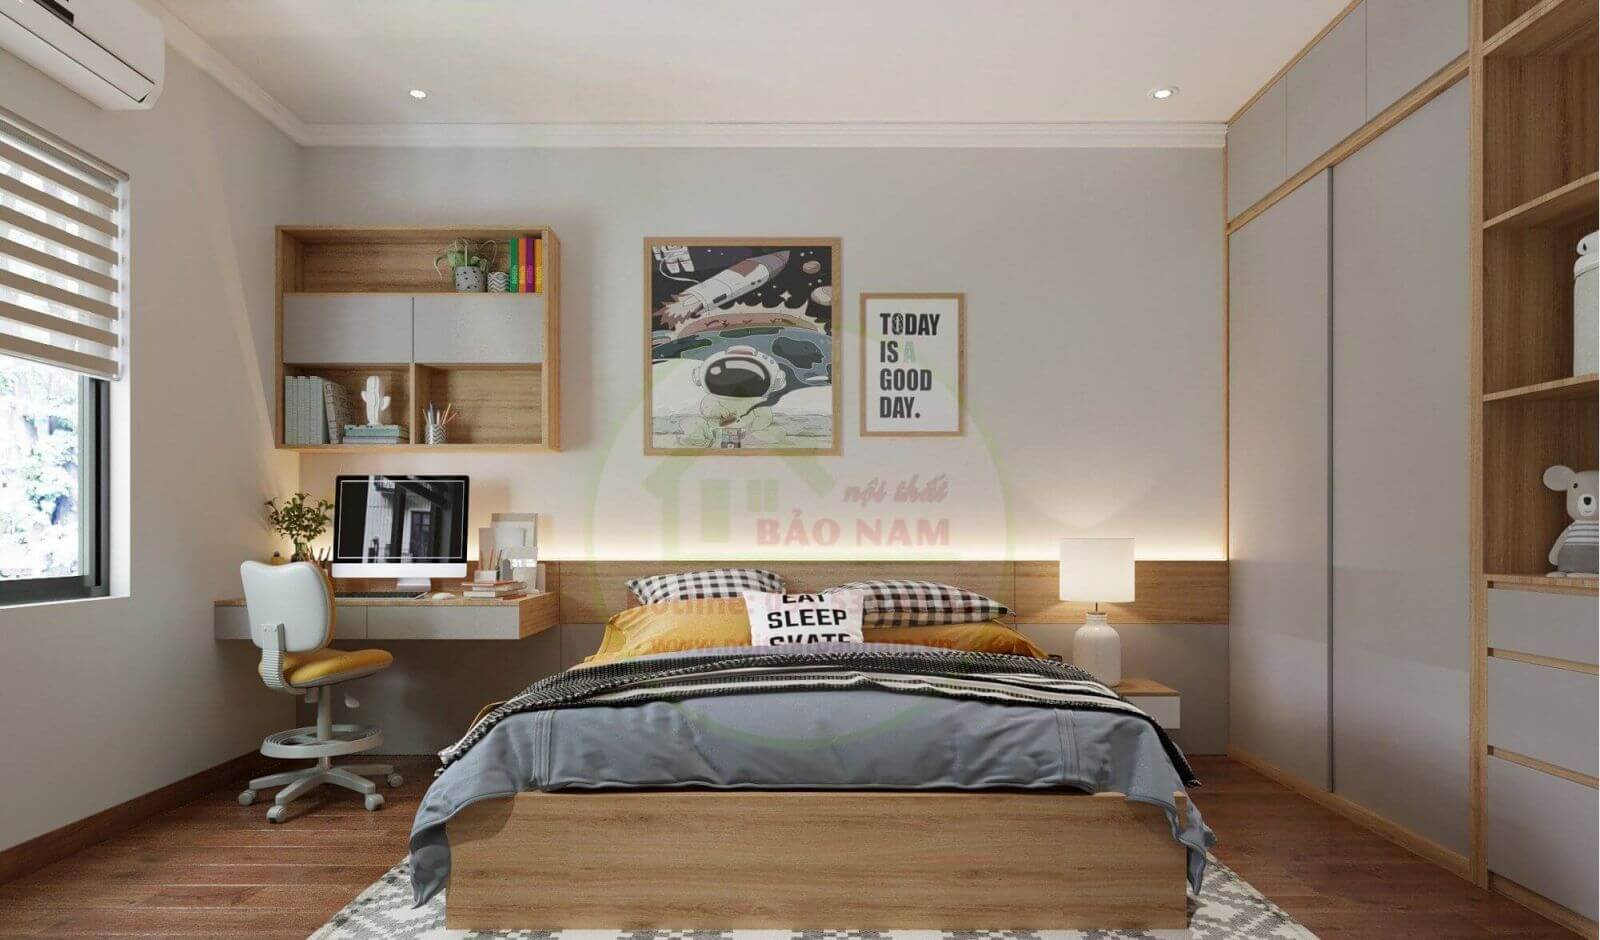 Với vật liệu gỗ công nghiệp chắc chắn và thẩm mỹ cao, giường ngủ gỗ công nghiệp luôn là sự lựa chọn đúng đắn cho phòng ngủ của bạn. Hình ảnh giường ngủ gỗ công nghiệp sẽ khiến bạn sẵn sàng thay đổi không gian phòng ngủ của mình.